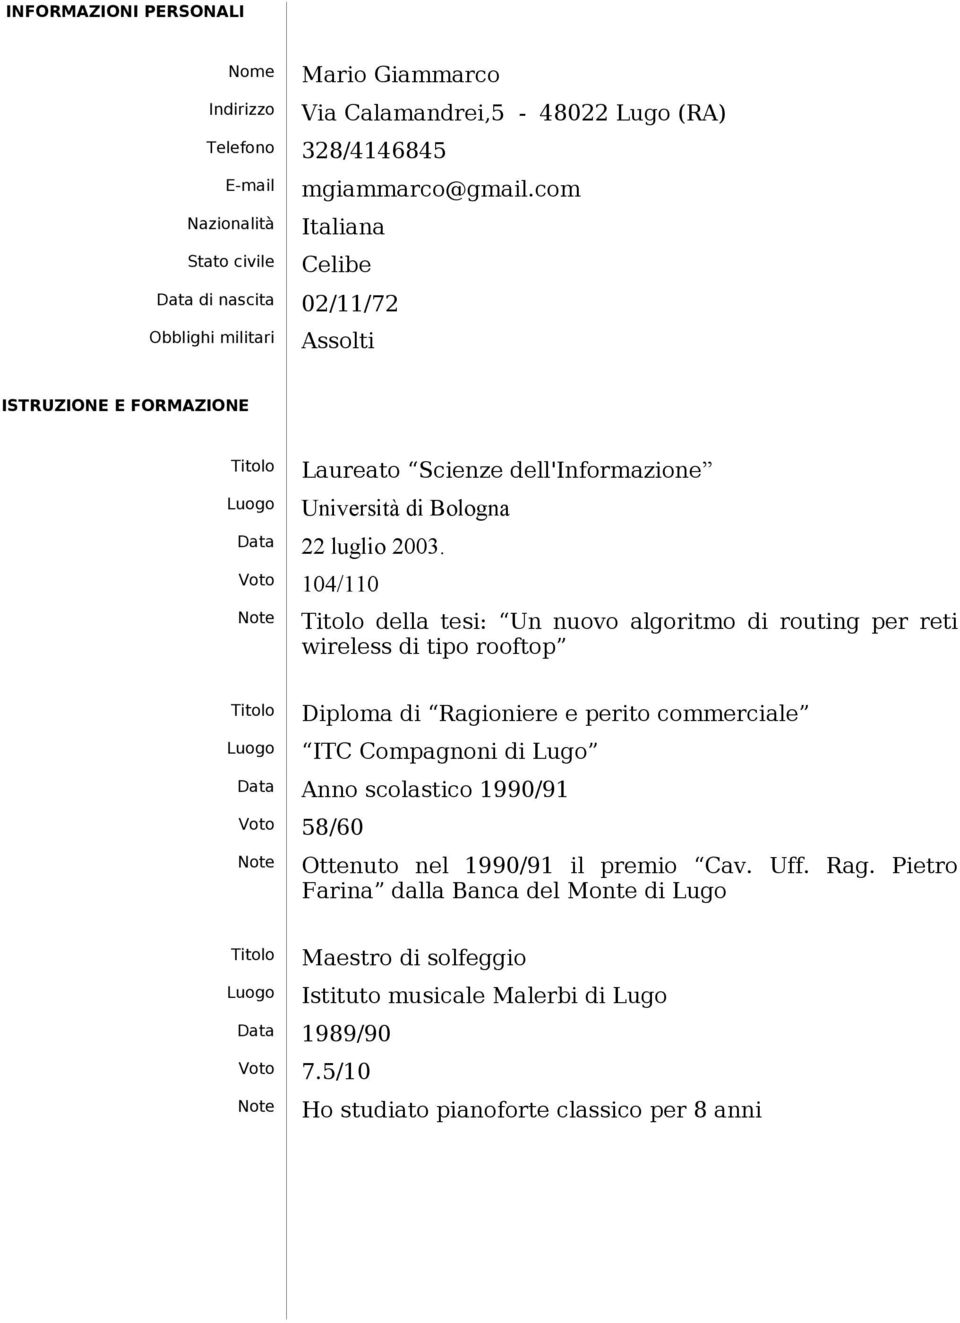 Voto 104/110 della tesi: Un nuovo algoritmo di routing per reti wireless di tipo rooftop Diploma di Ragioniere e perito commerciale ITC Compagnoni di Lugo Data Anno scolastico 1990/91